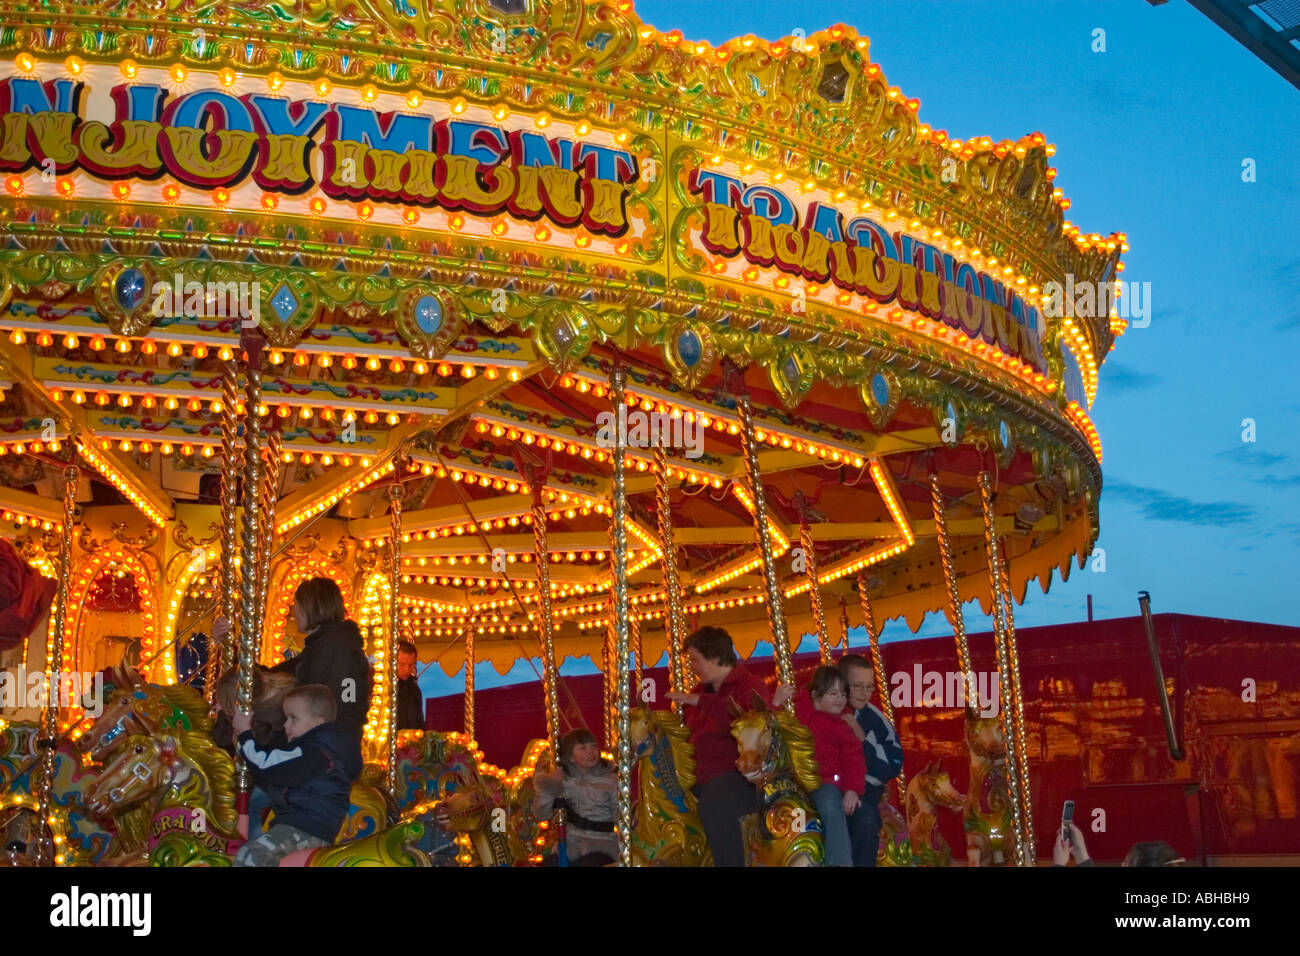 Illuminated carousel fairground ride Stock Photo